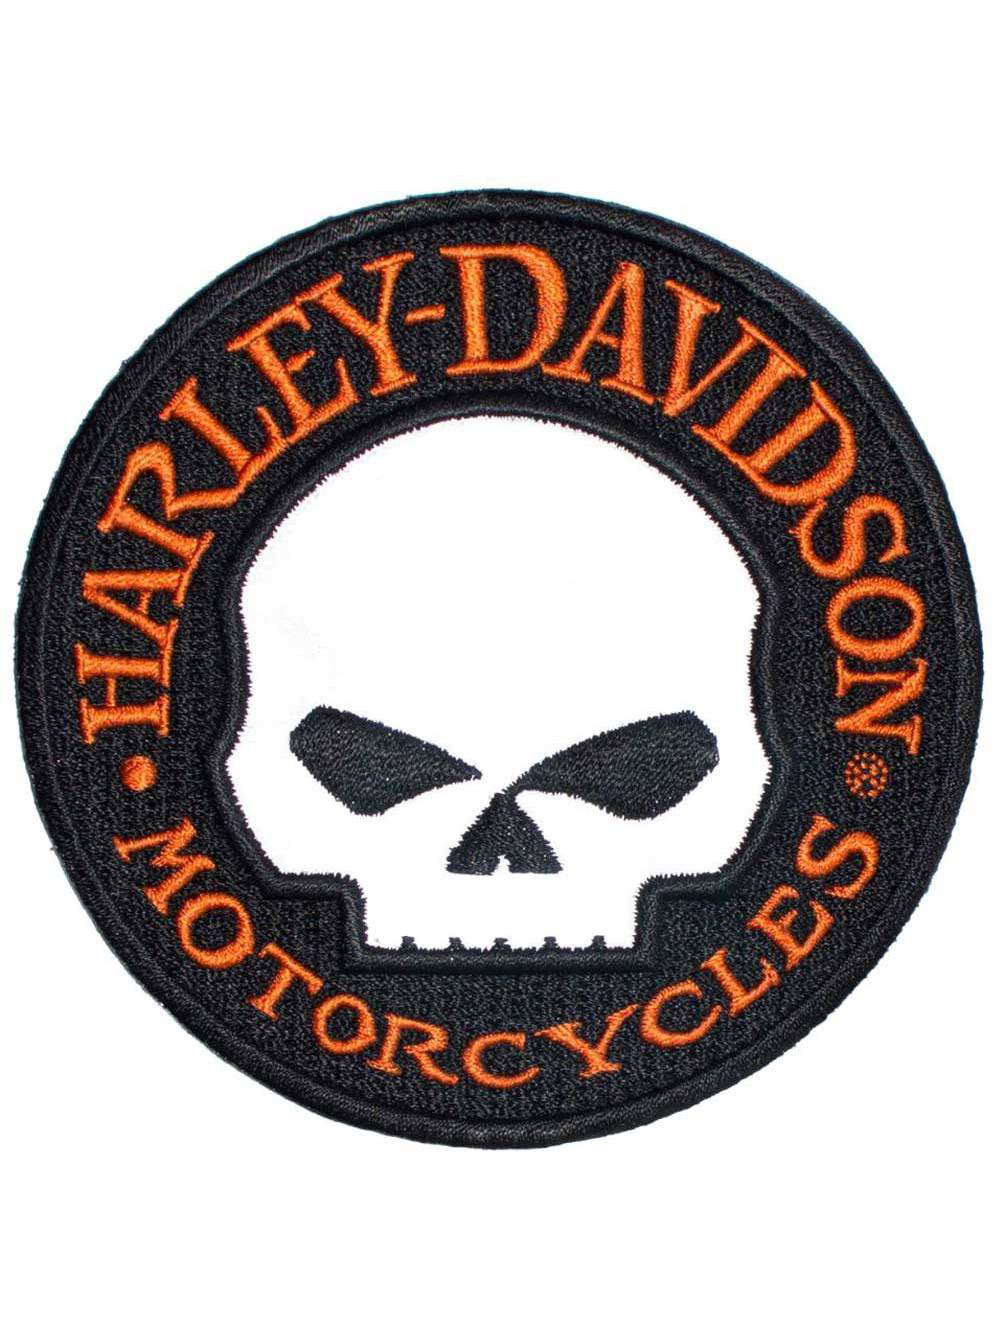 9” Harley Davidson Reflective “Willie G” Skull Round Patch 